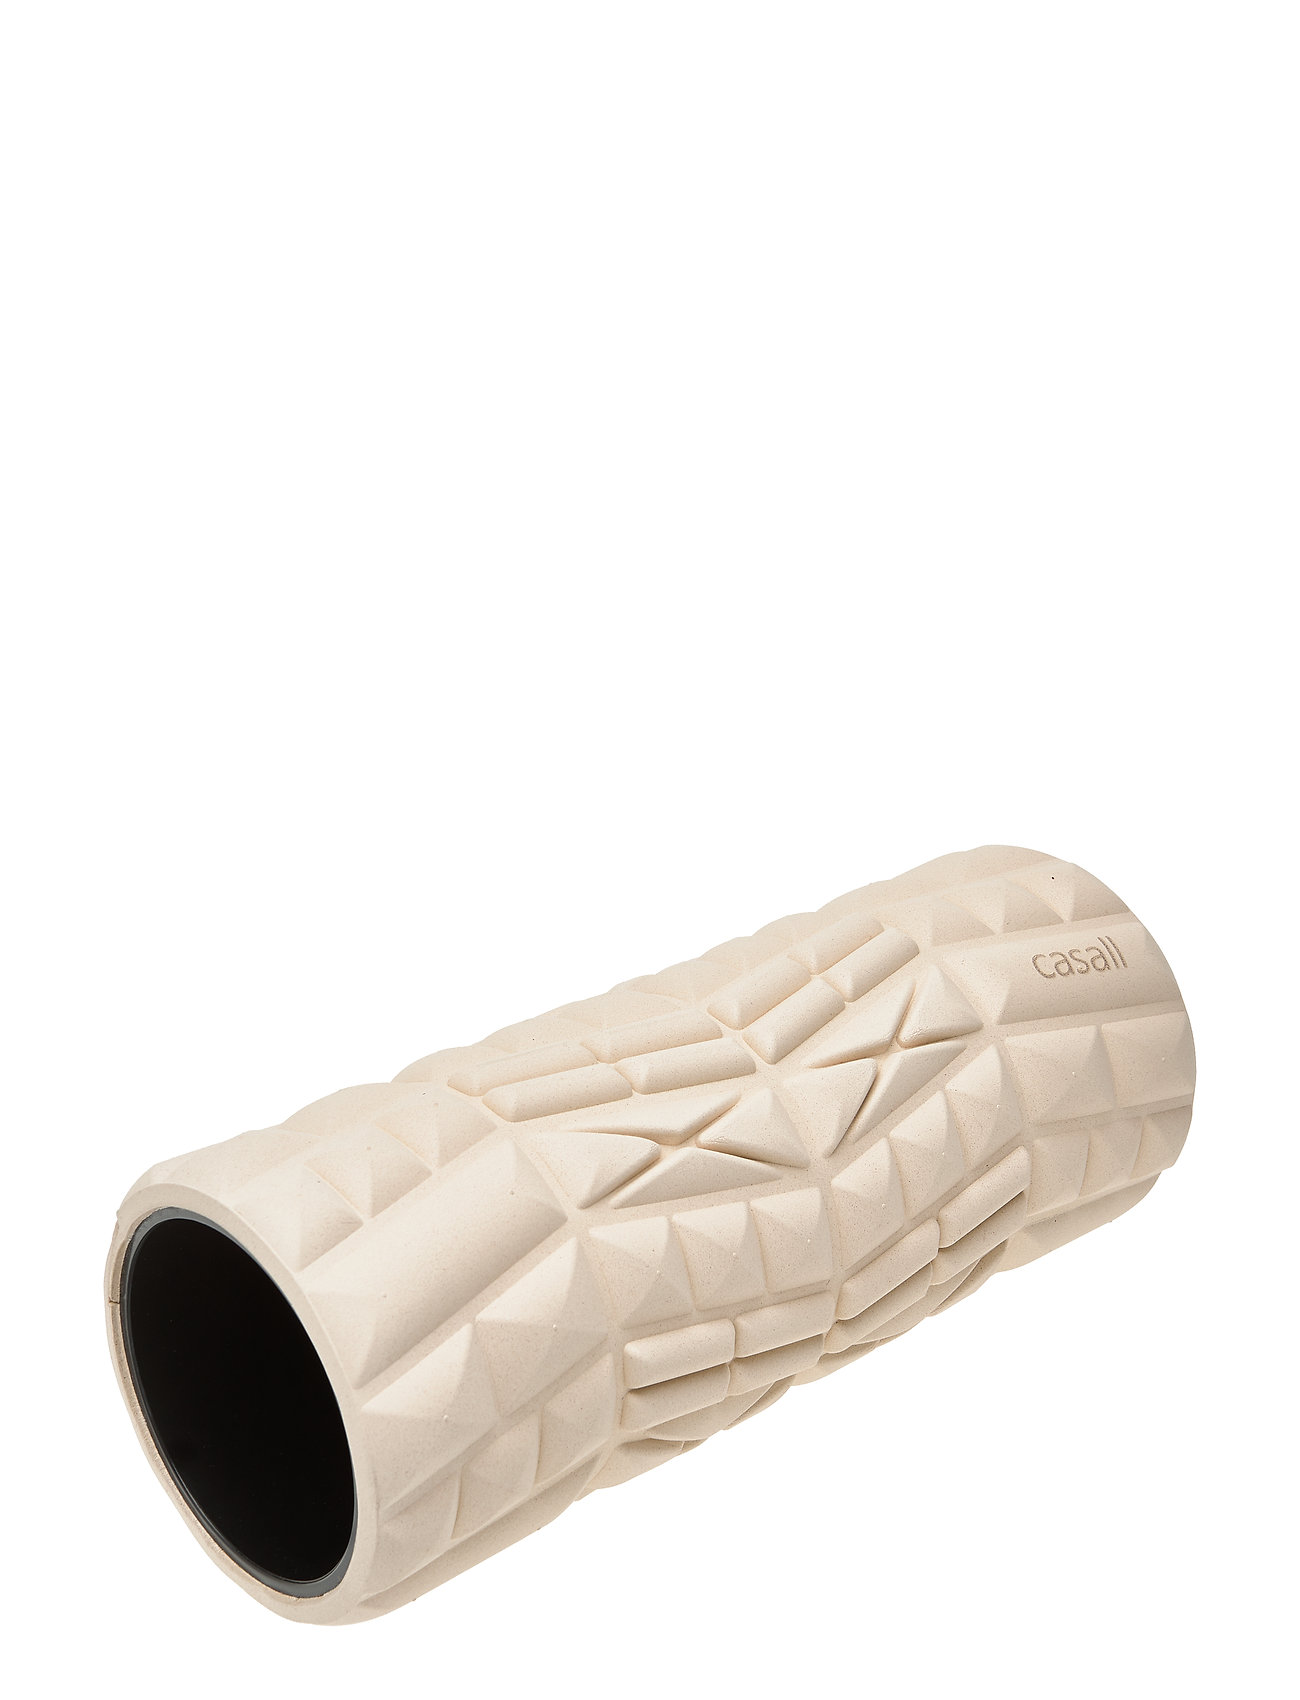 Tube Roll Bamboo Accessories Sports Equipment Workout Equipment Foam Rolls & Massage Balls Kermanvärinen Casall